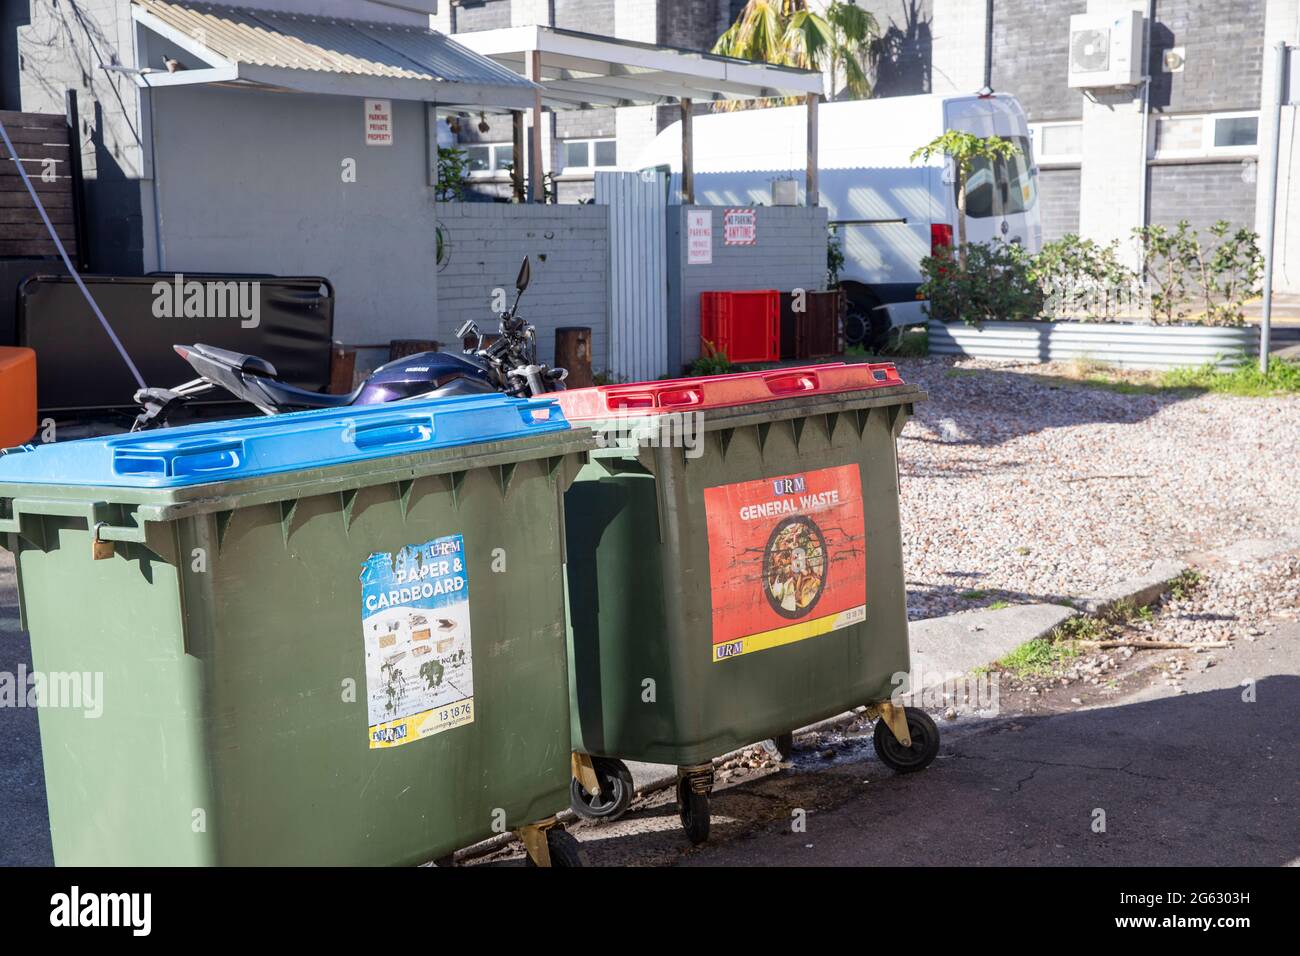 Poubelles et bacs de recyclage australiens dans la corbeille rouge de Sydney pour les déchets généraux et la poubelle bleue pour le recyclage du papier et du carton,Australie Banque D'Images